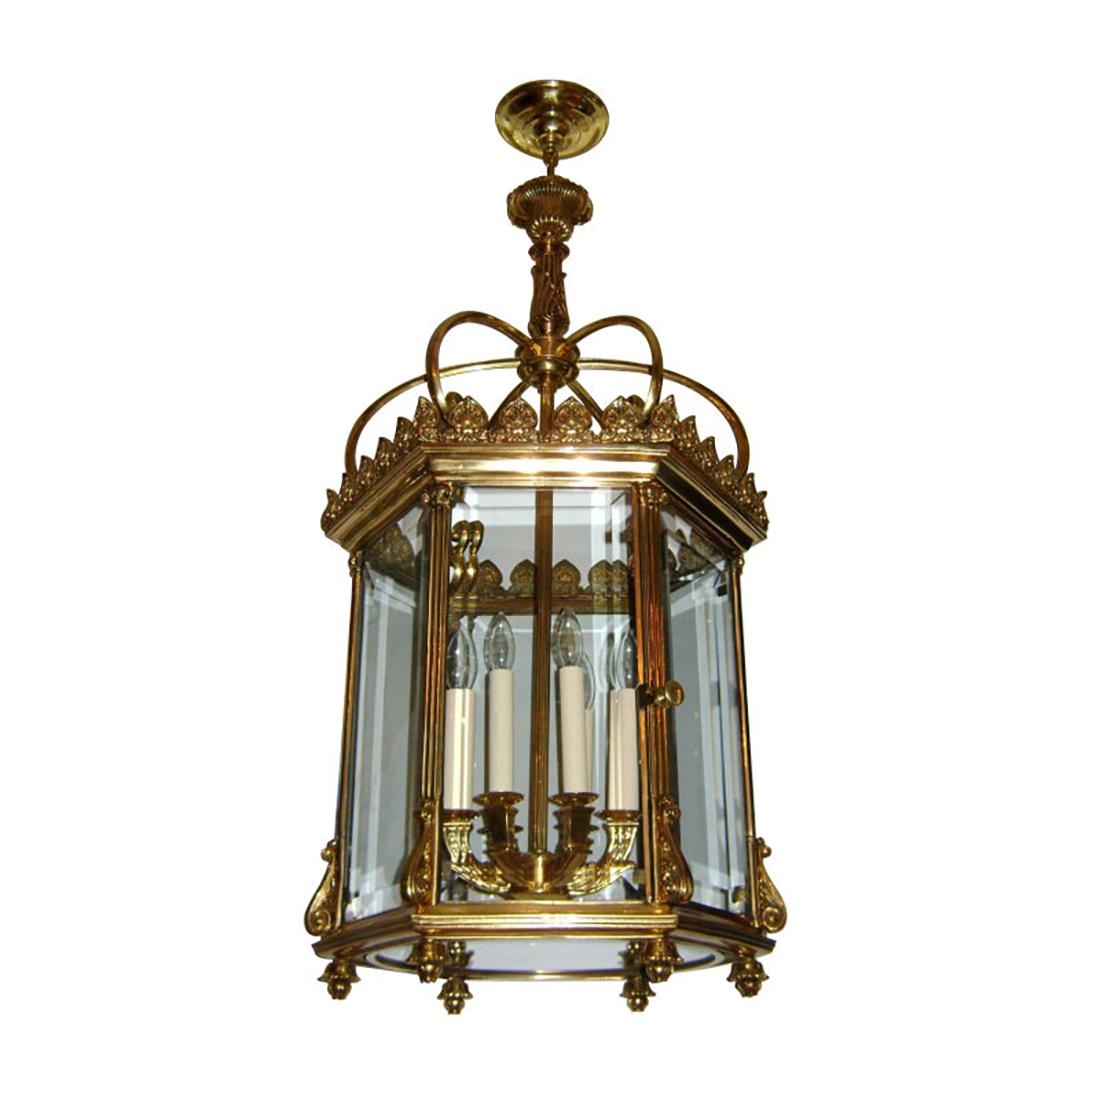 4 vergoldete Bronzelaternen im neoklassizistischen englischen Stil der 1940er Jahre mit sechs Lichtern im Inneren. Einzelverkauf.

Abmessungen:
Minimaler Abfall:  40″
Durchmesser:  19″